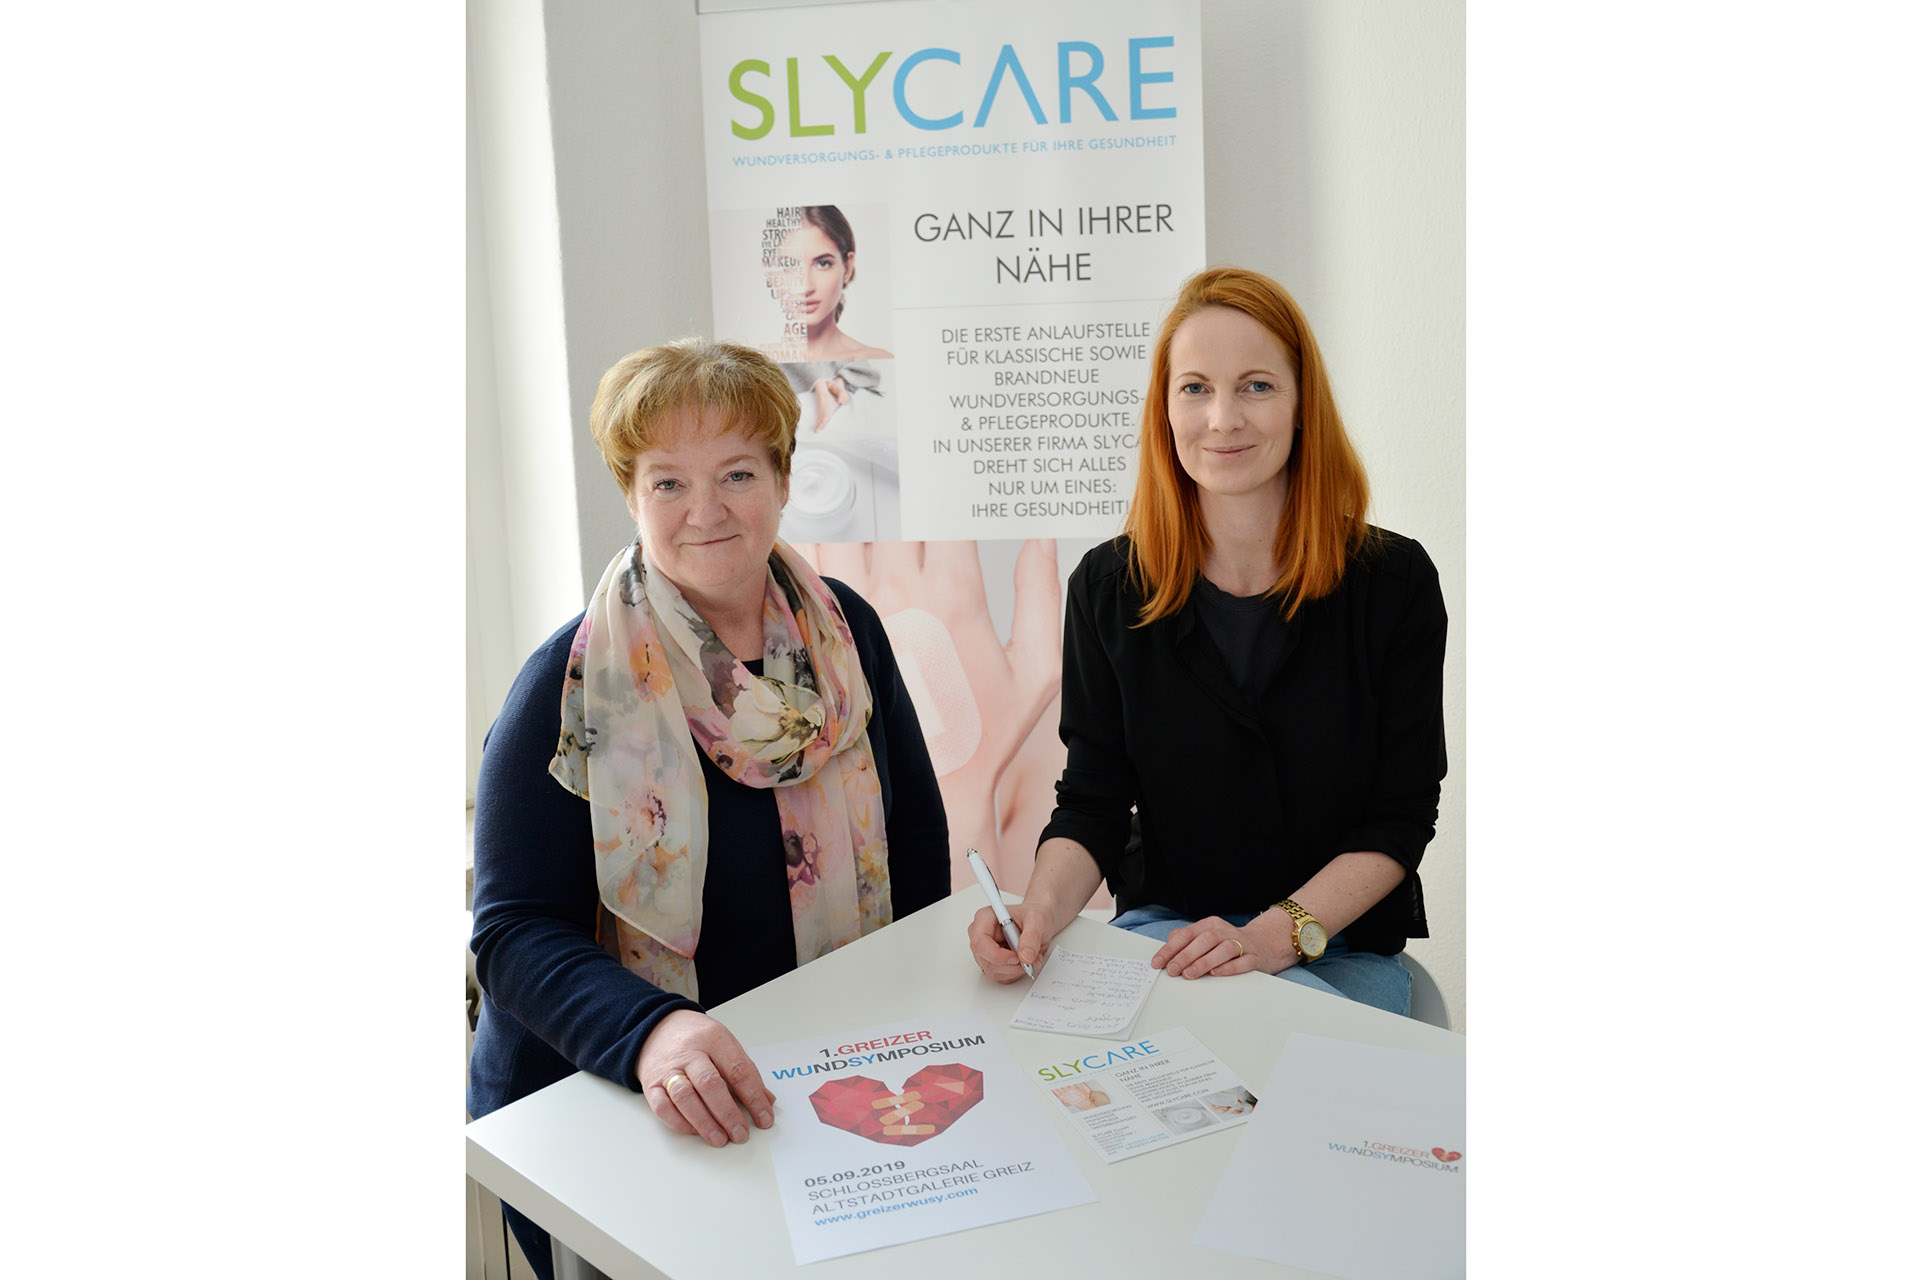 SLYCARE GmbH präsentiert: 1. Greizer Wundsymposium - Medizinischer Fachkongress